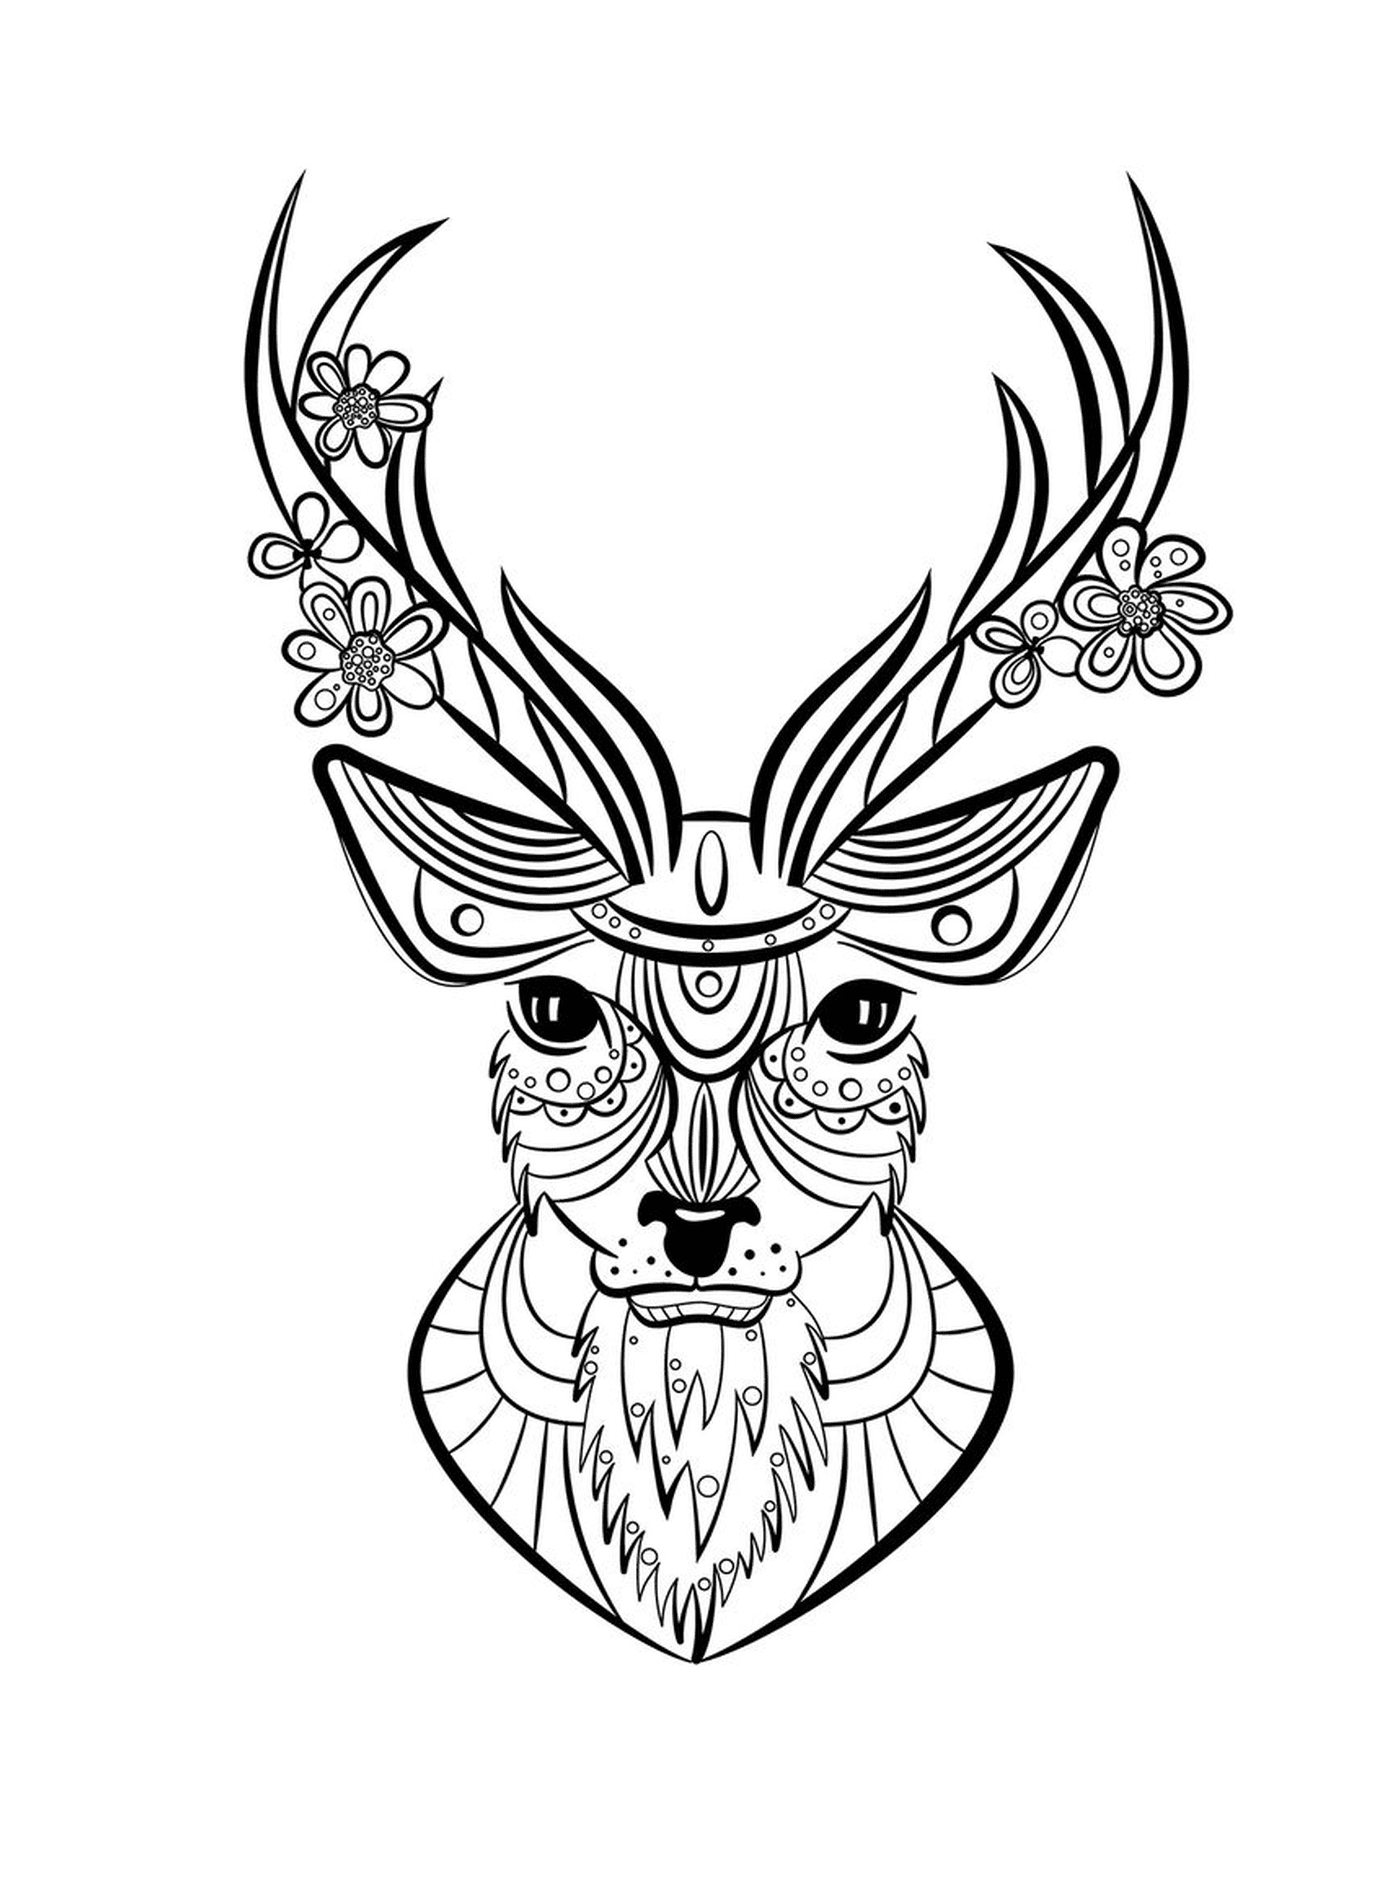   Cerf avec une tête ornée de motifs floraux 